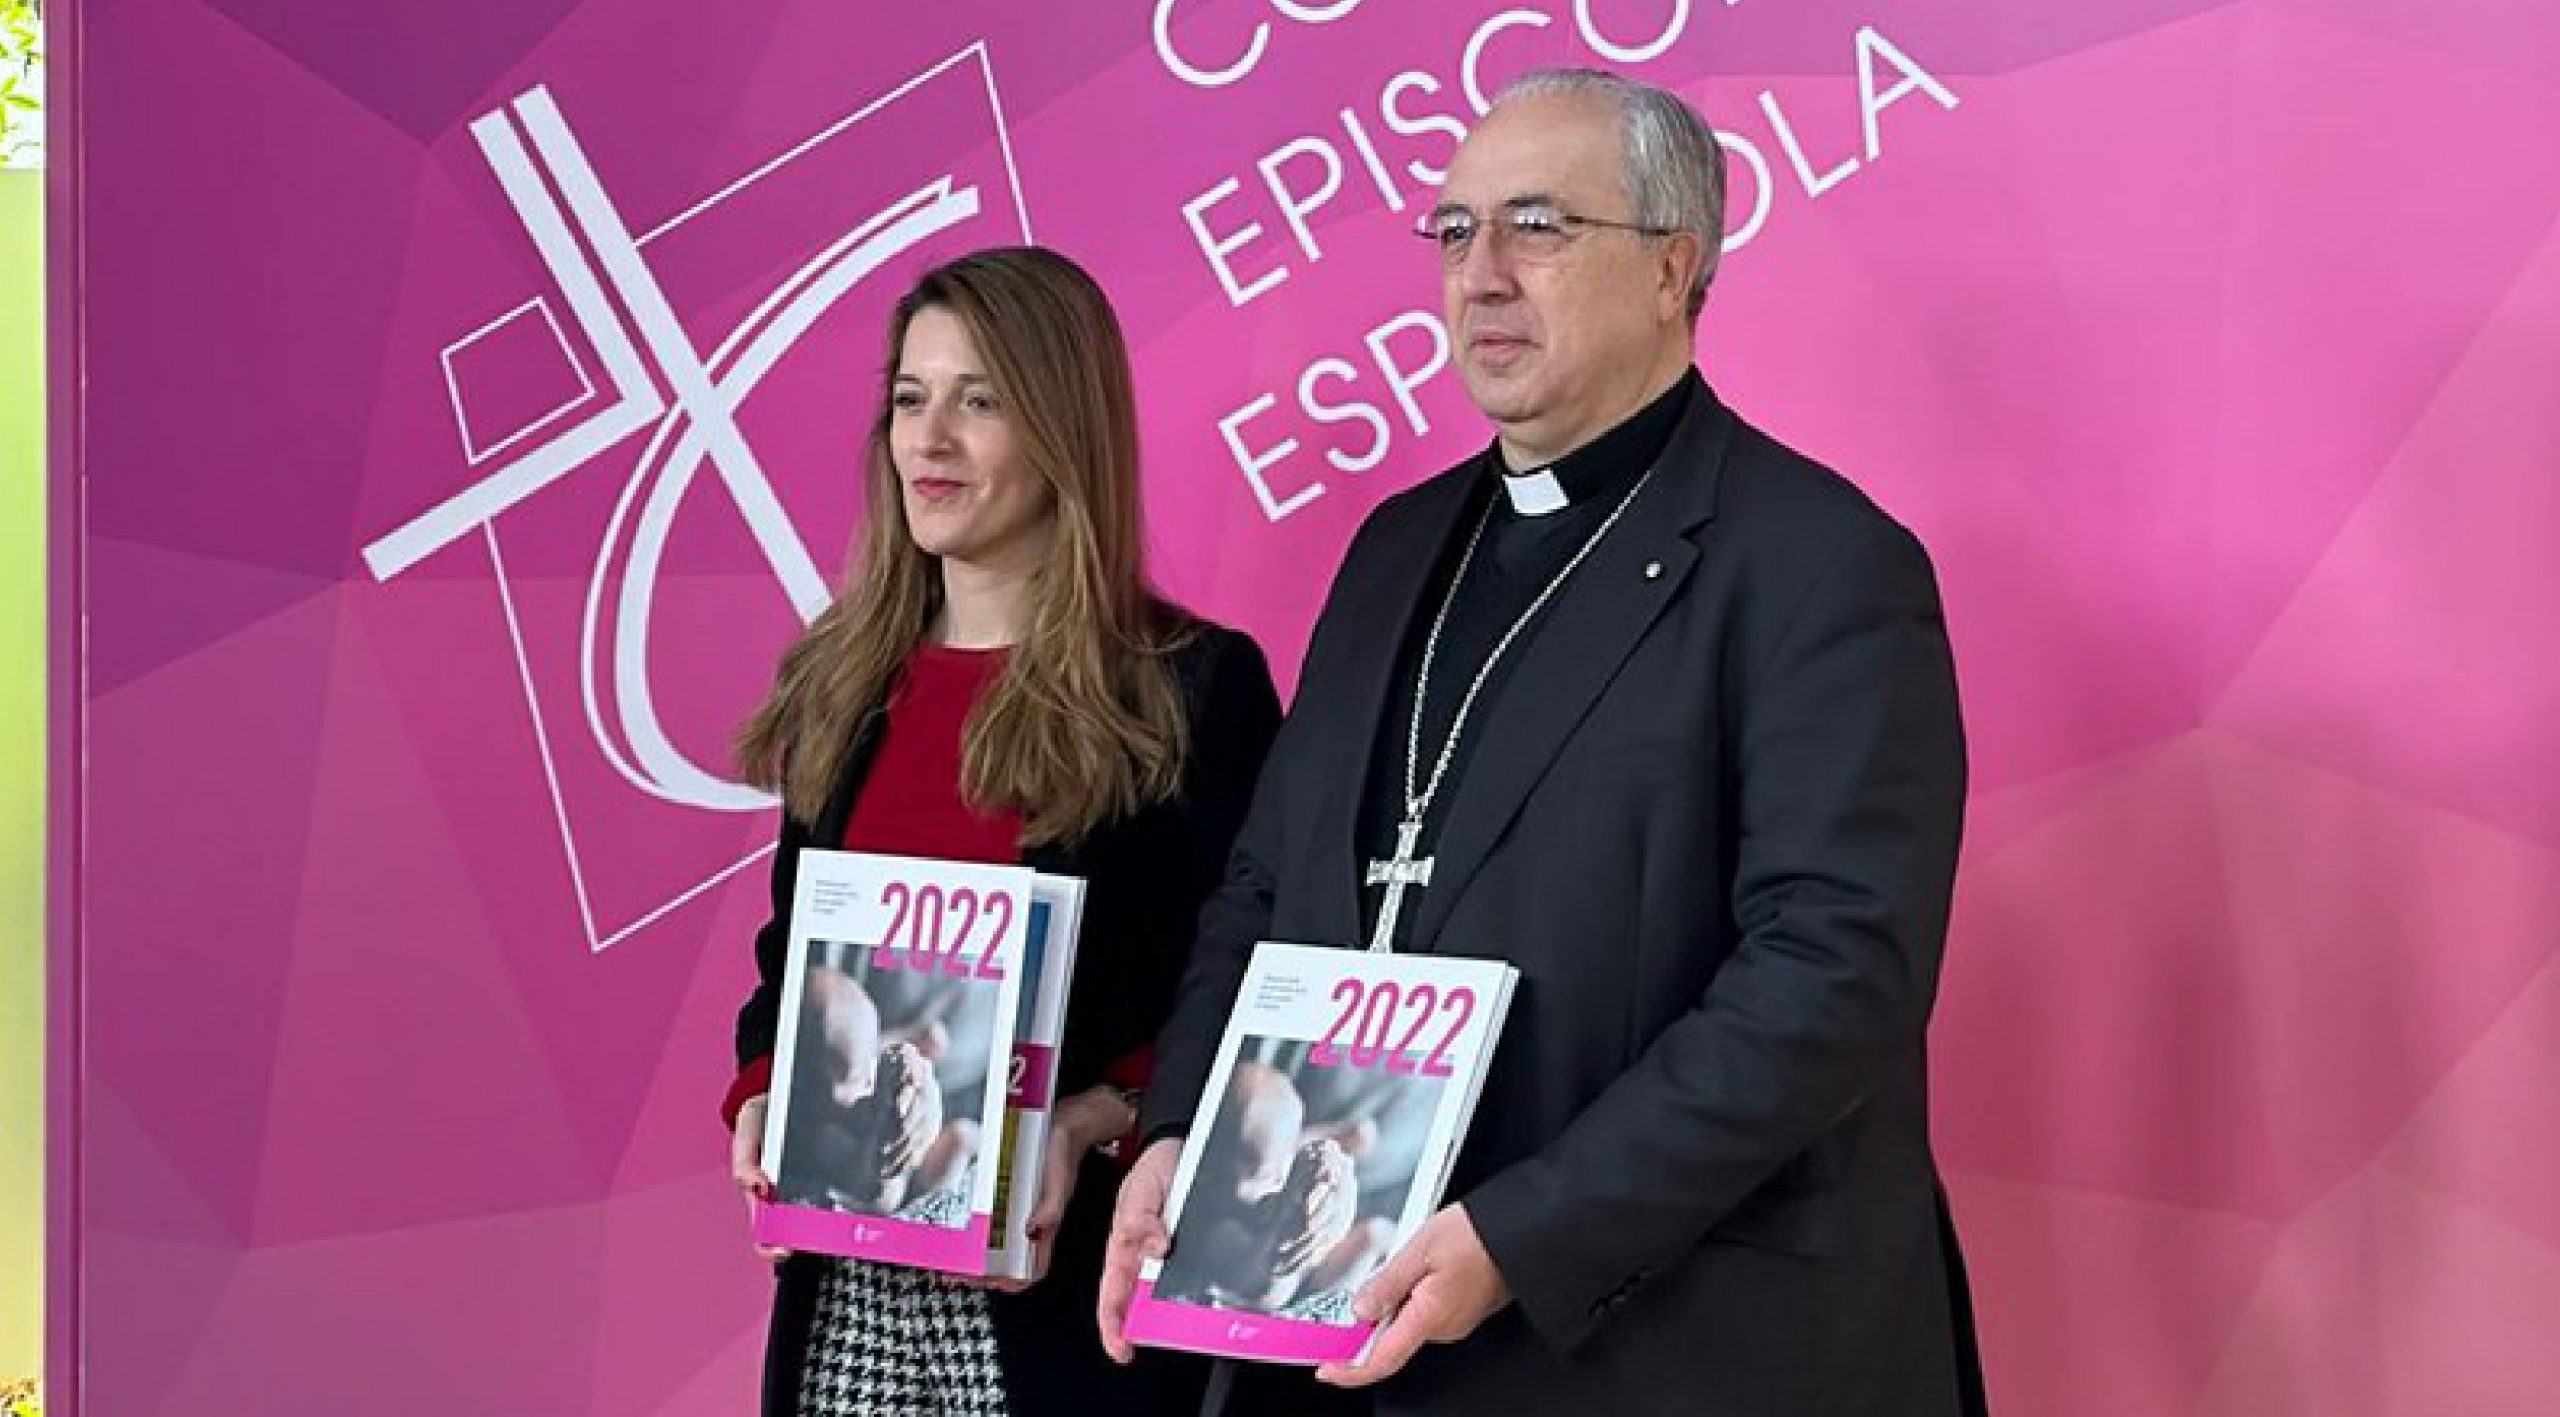 La Conférence épiscopale espagnole CEE a présenté le rapport annuel sur les activités de l'Église catholique en Espagne pour l'année 2022 © CCE